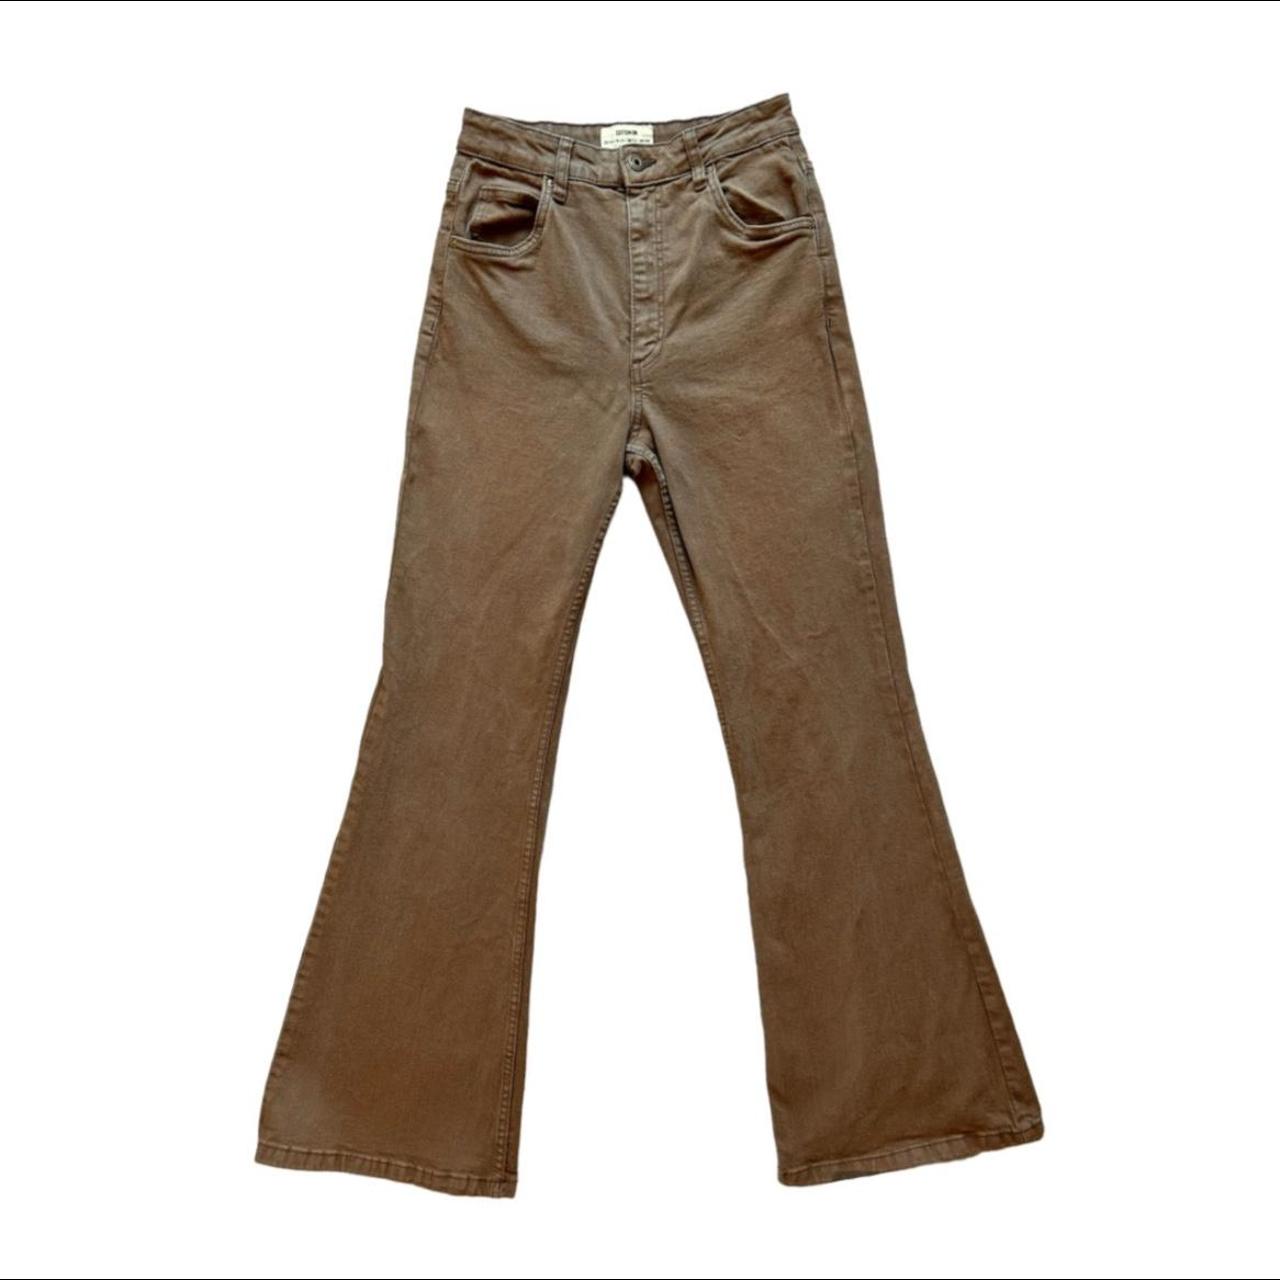 brown original flare jeans #flare #jeans #depop... - Depop